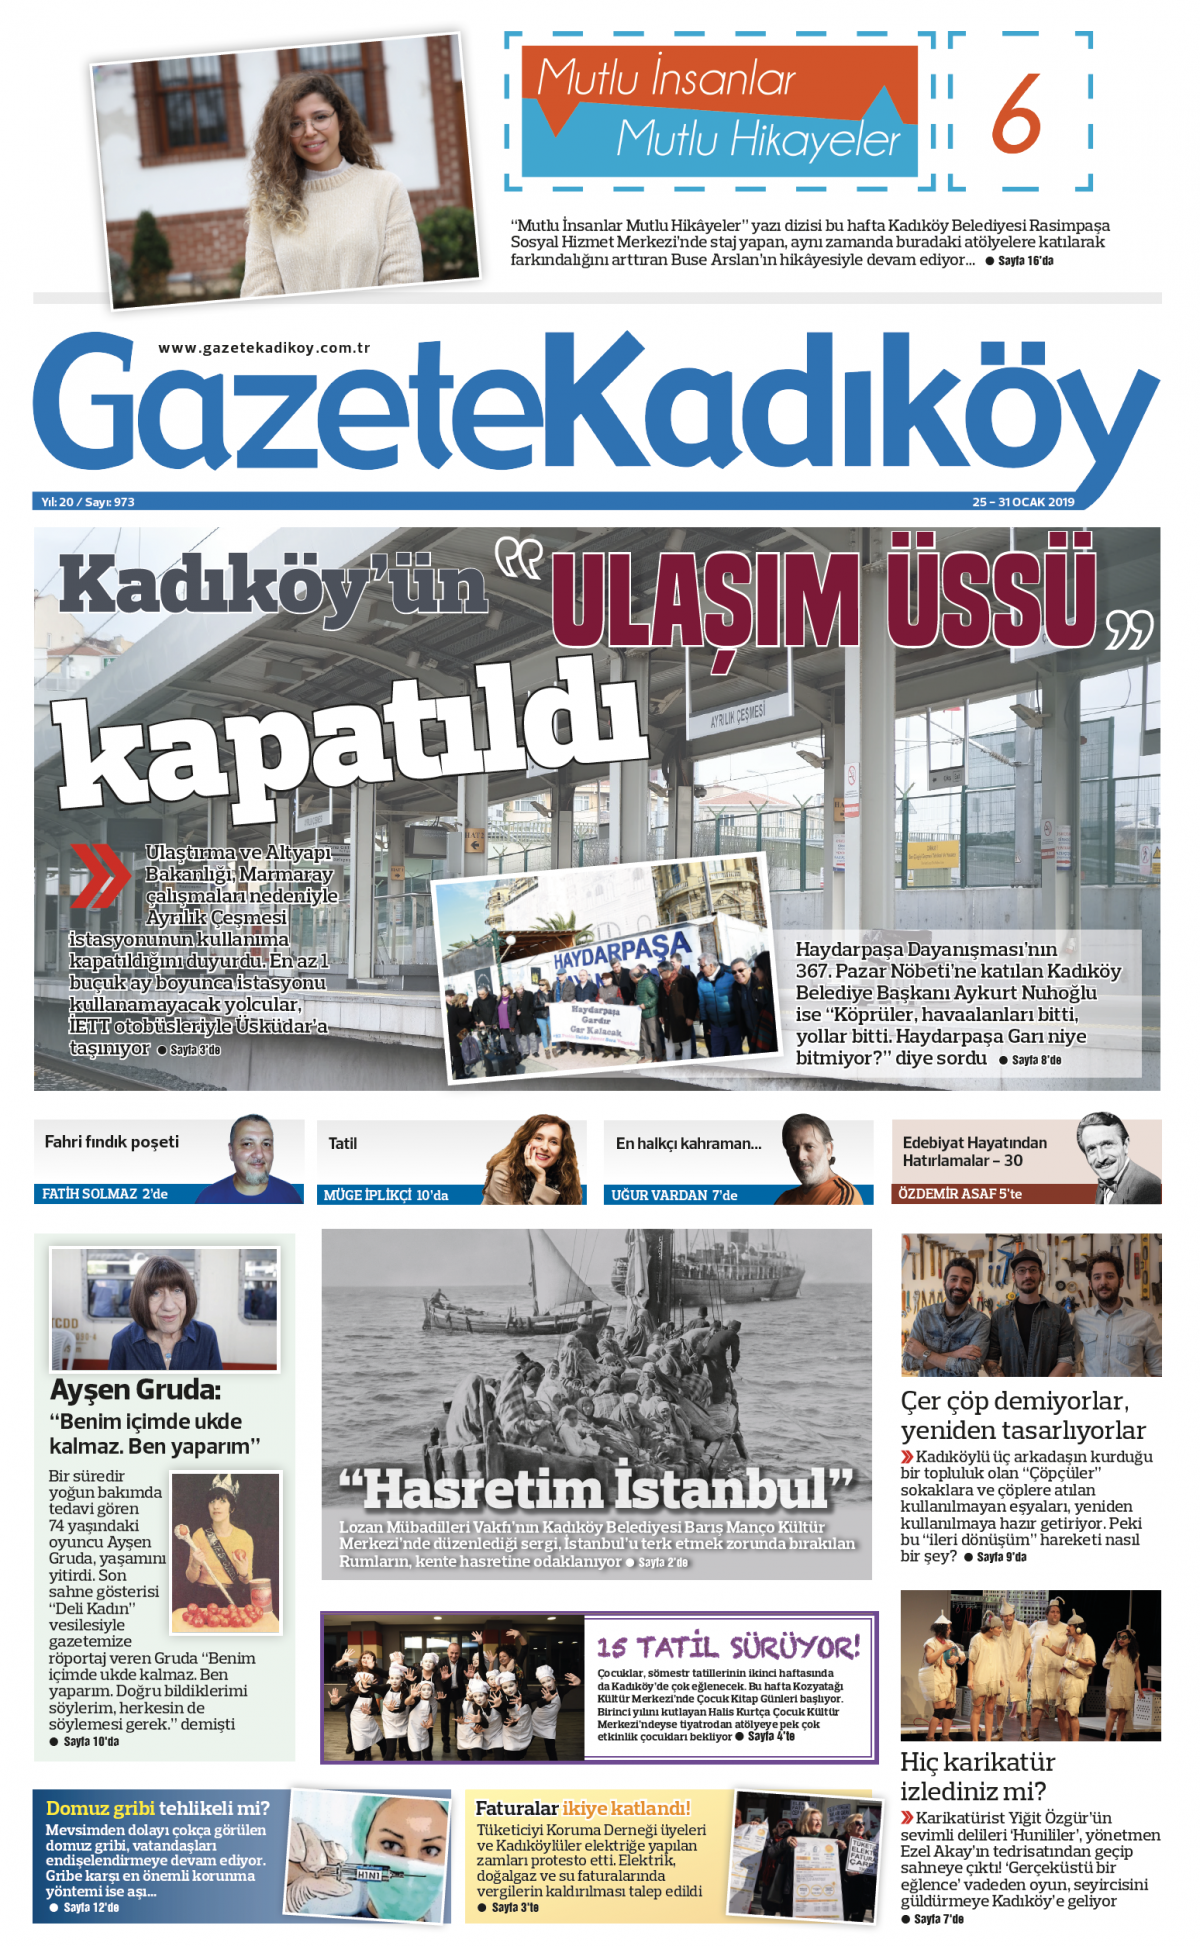 Gazete Kadıköy - 973.SAYI